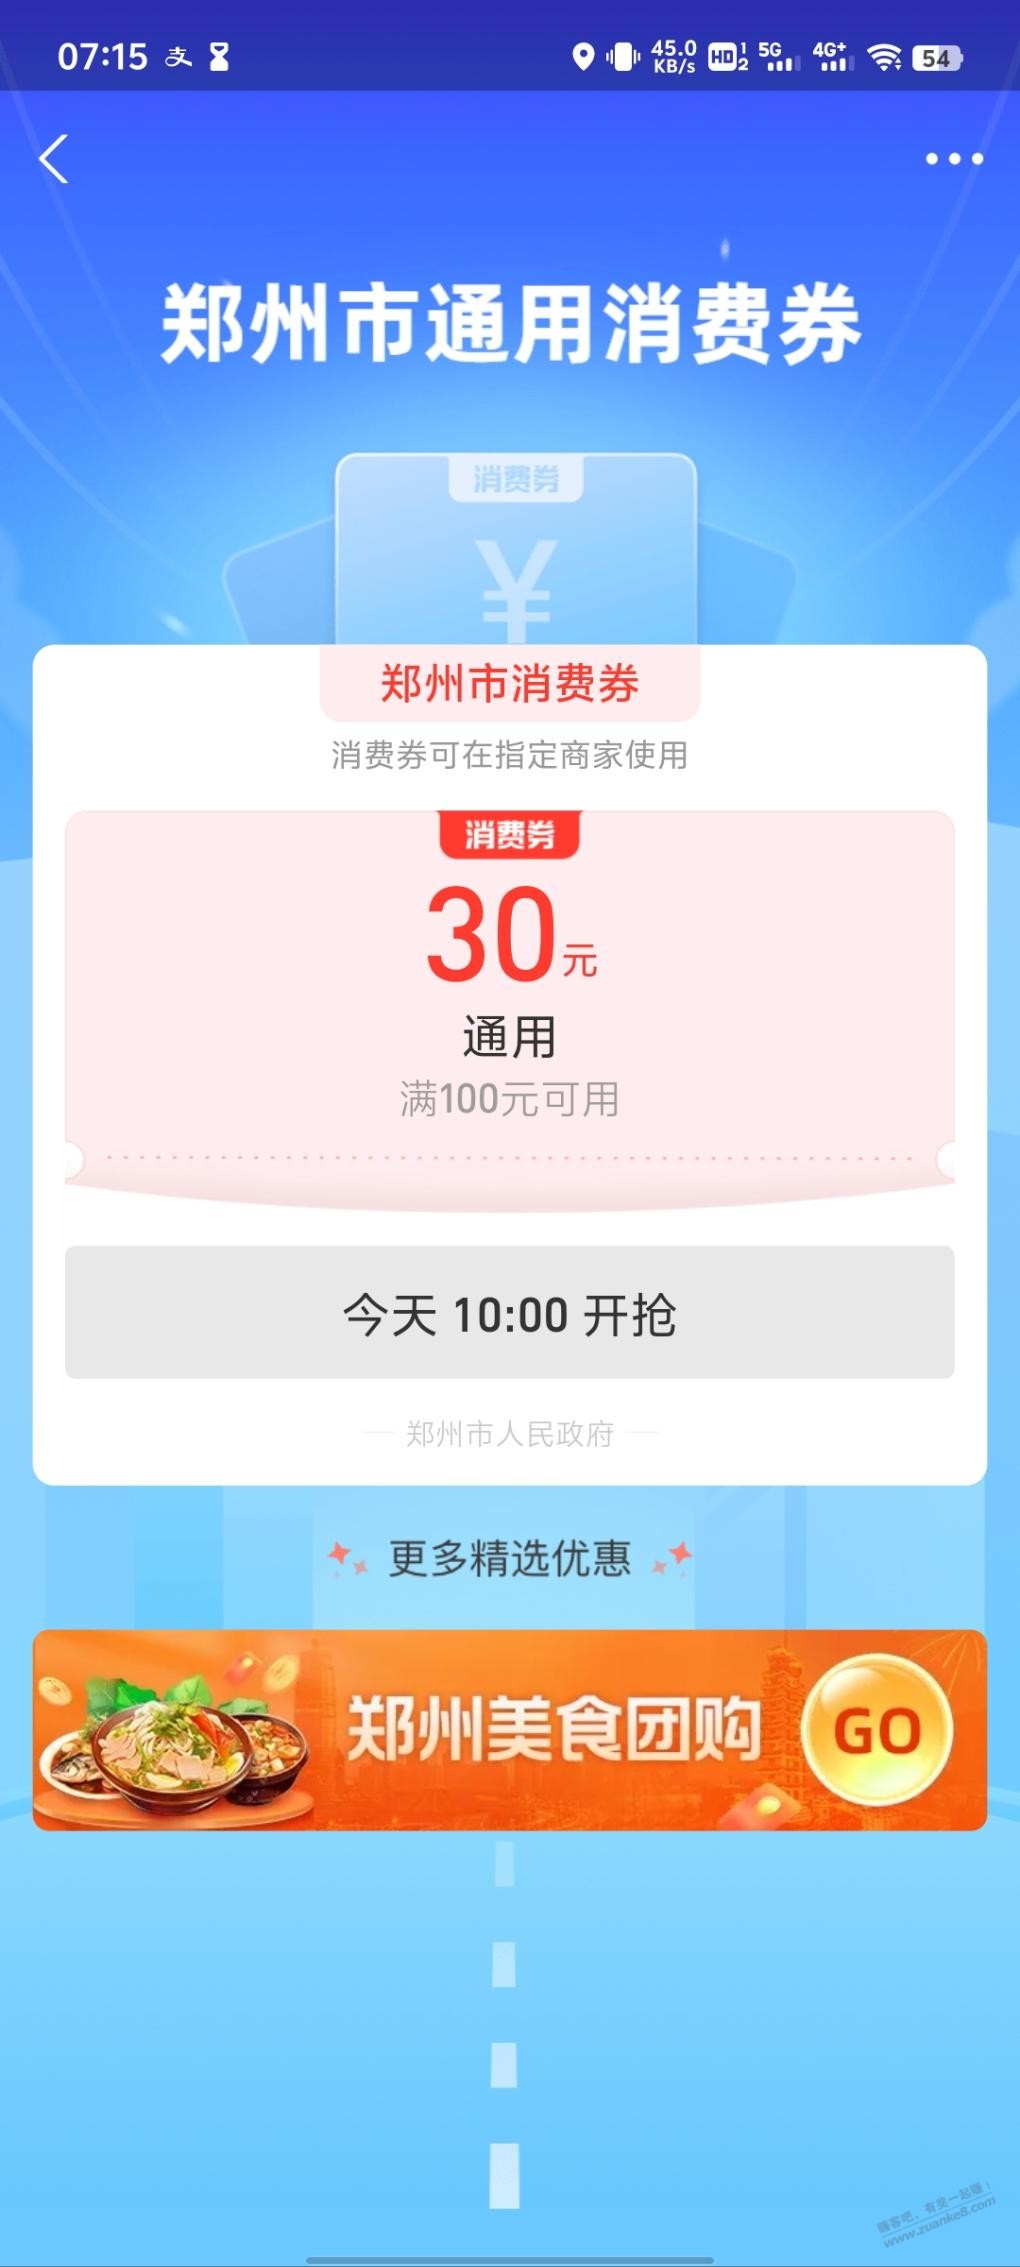 郑州云闪付支付宝十点消费券-惠小助(52huixz.com)